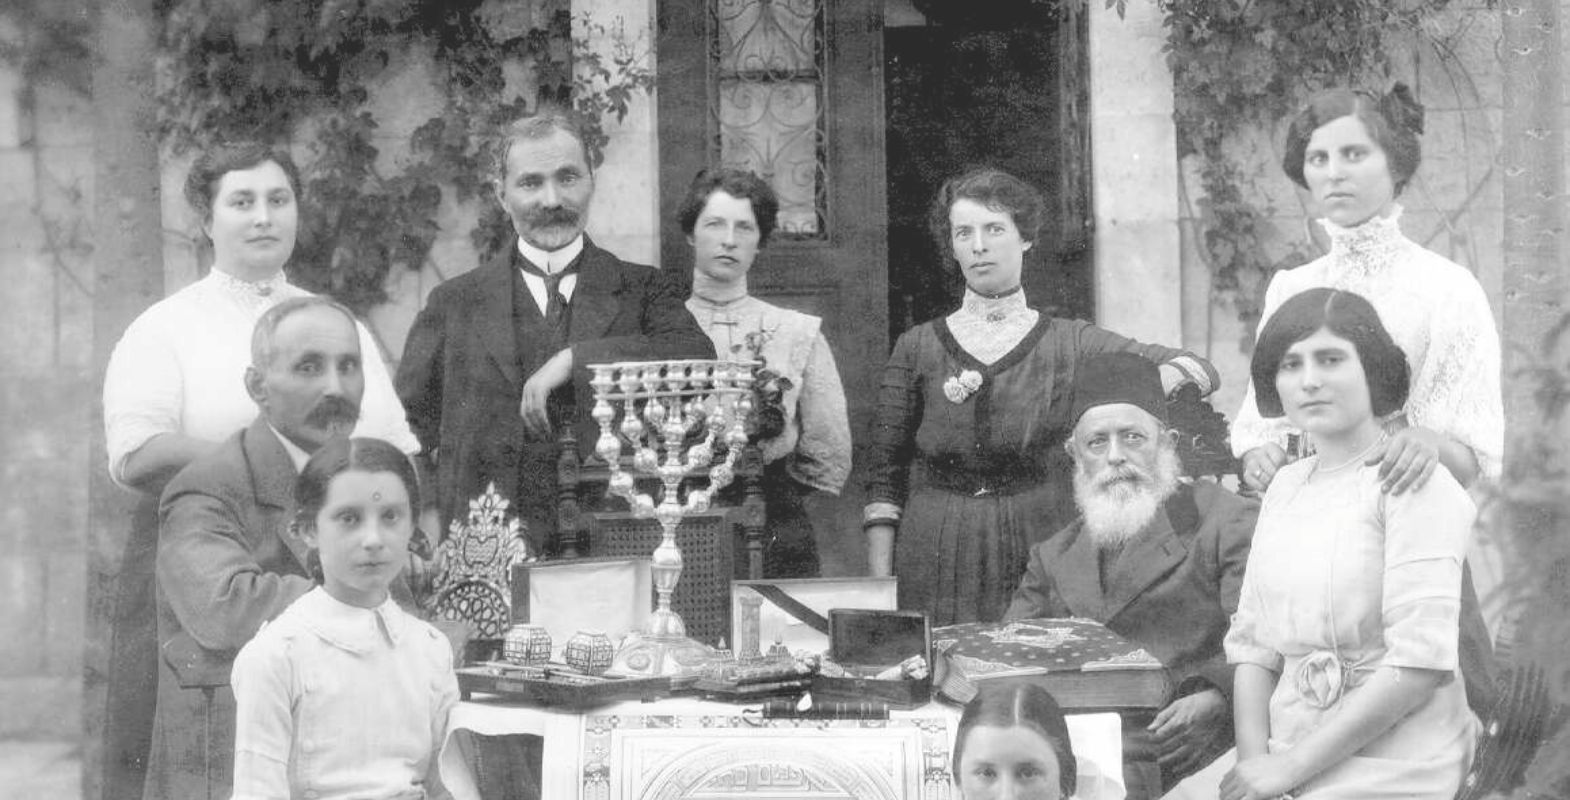 משפחת אליעזר ליפמן (בוים) קאמיניץ עם אפרים כהן, בעל המלון ההיסטורי בירושלים בו התארחו הרצל, רוטשילד ועוד. (1912)